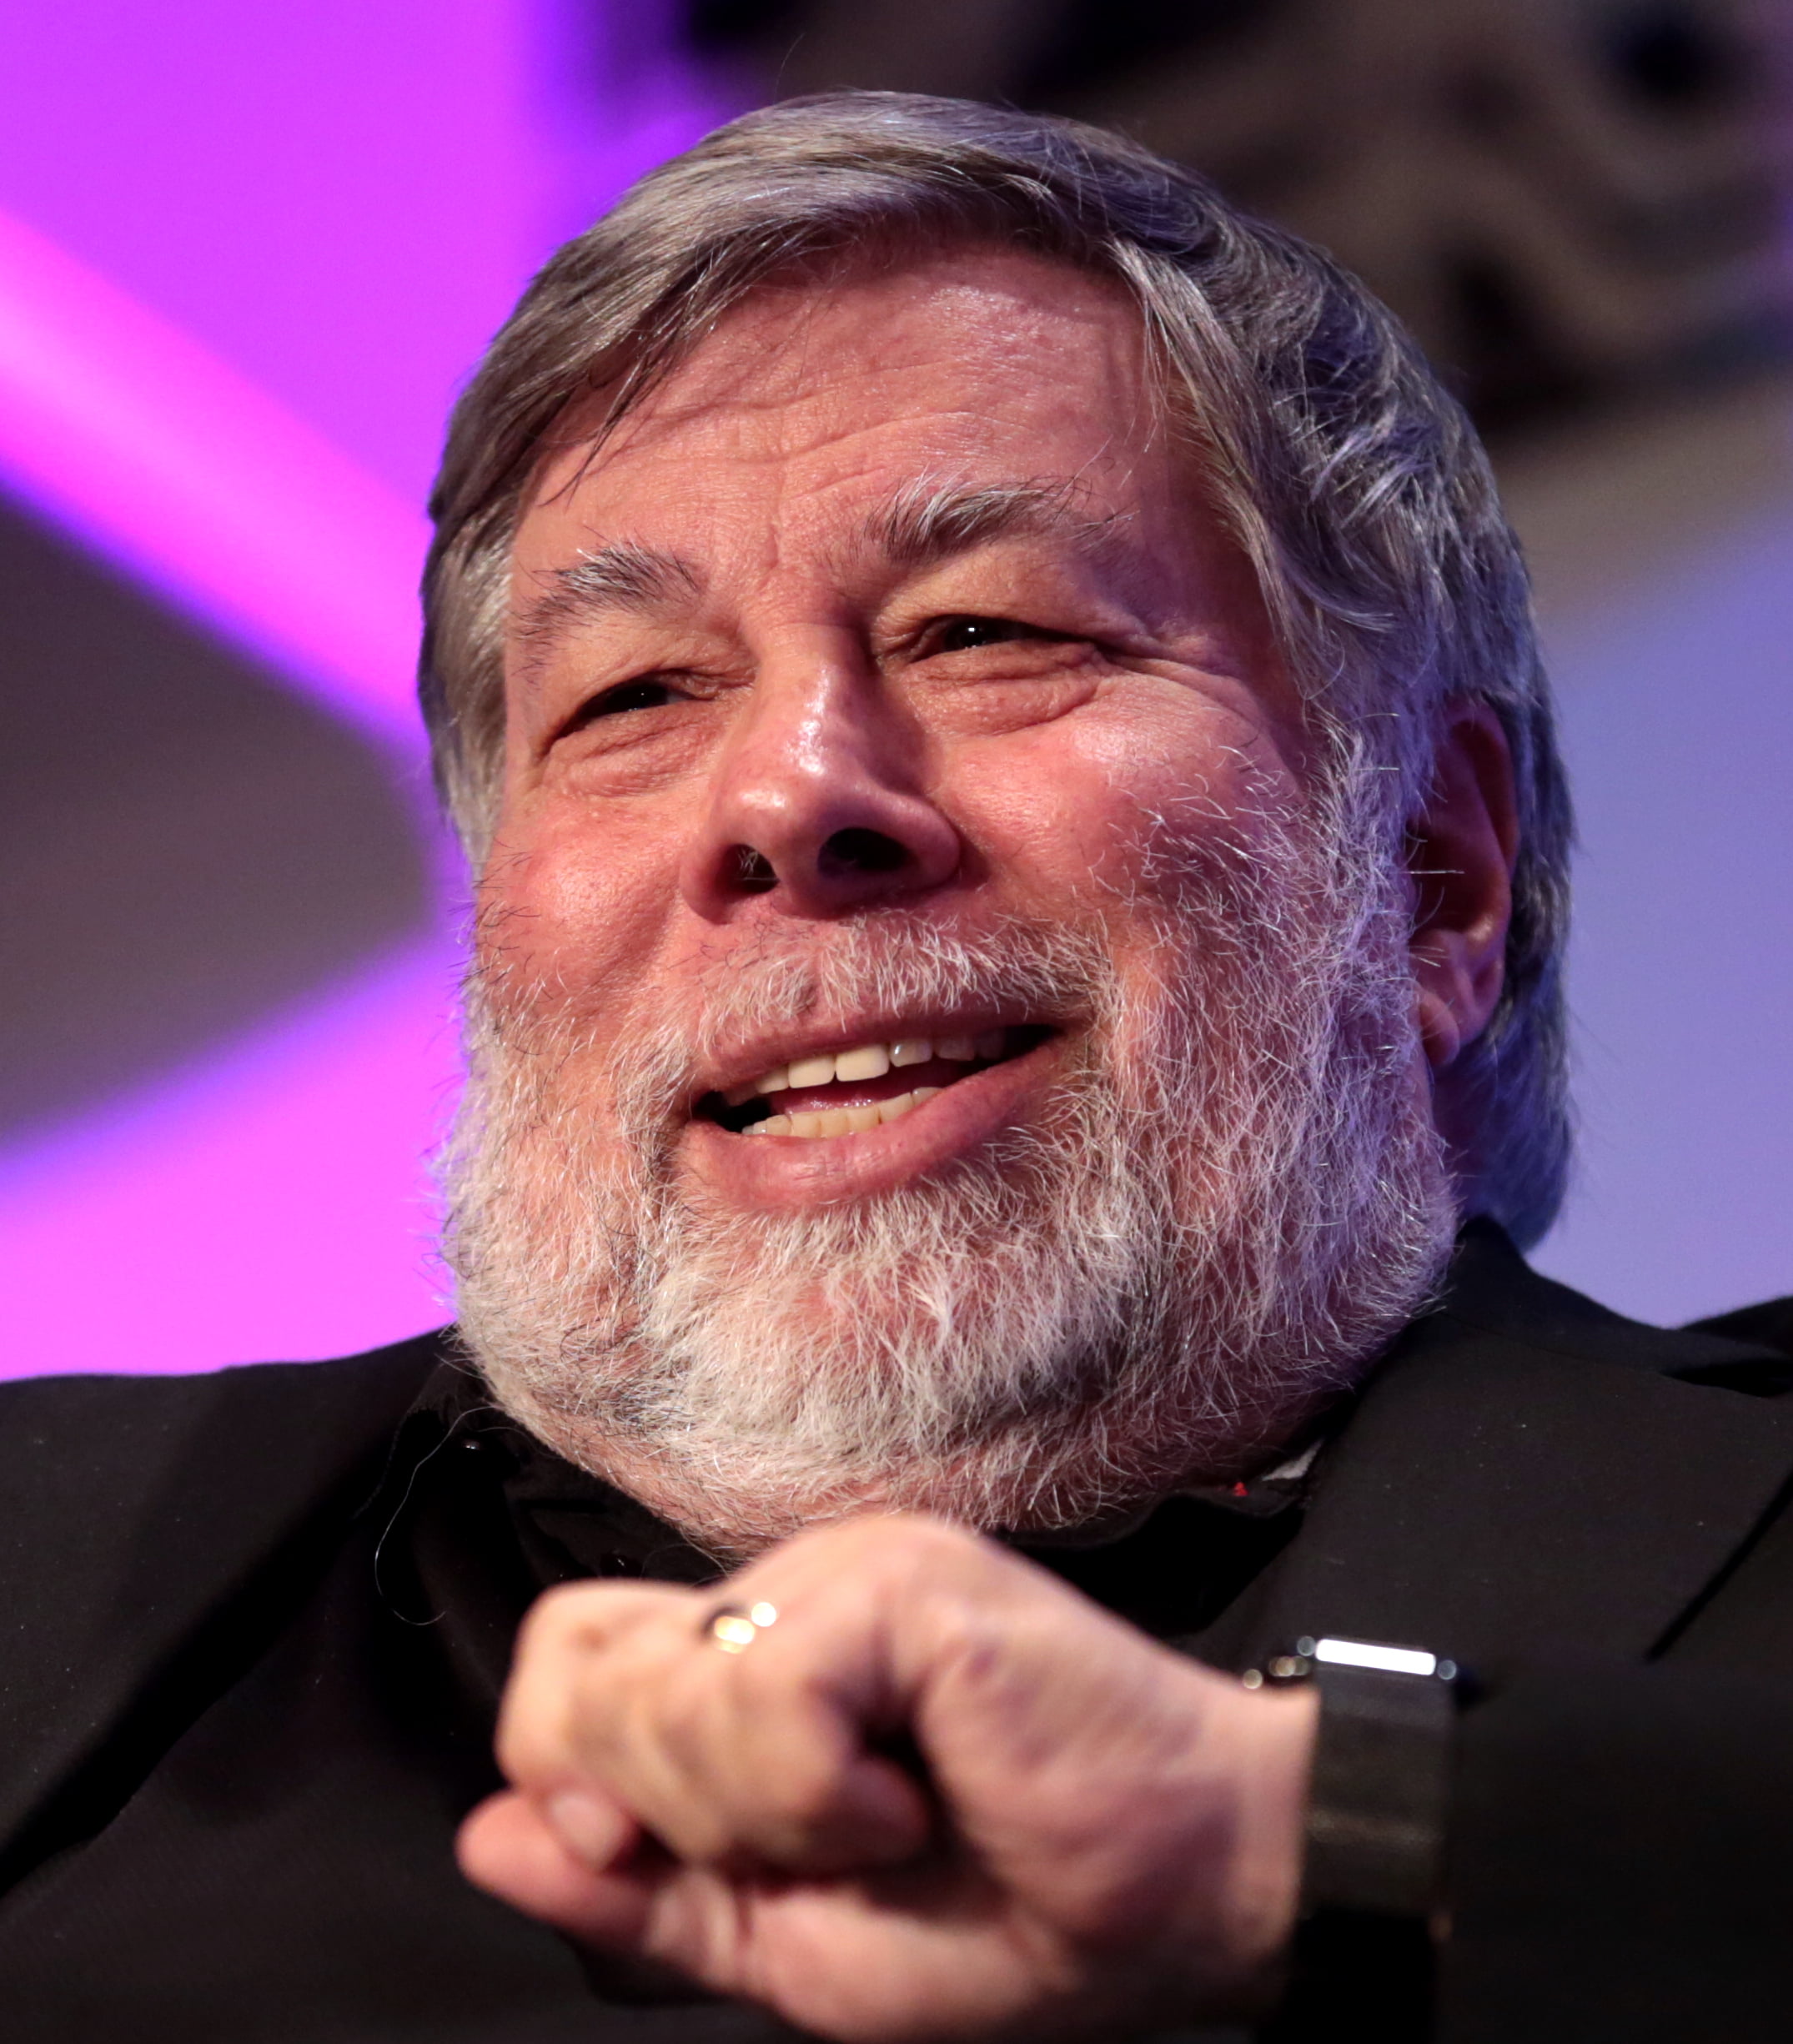 Steve Wozniak technology speaker and keynote speaker